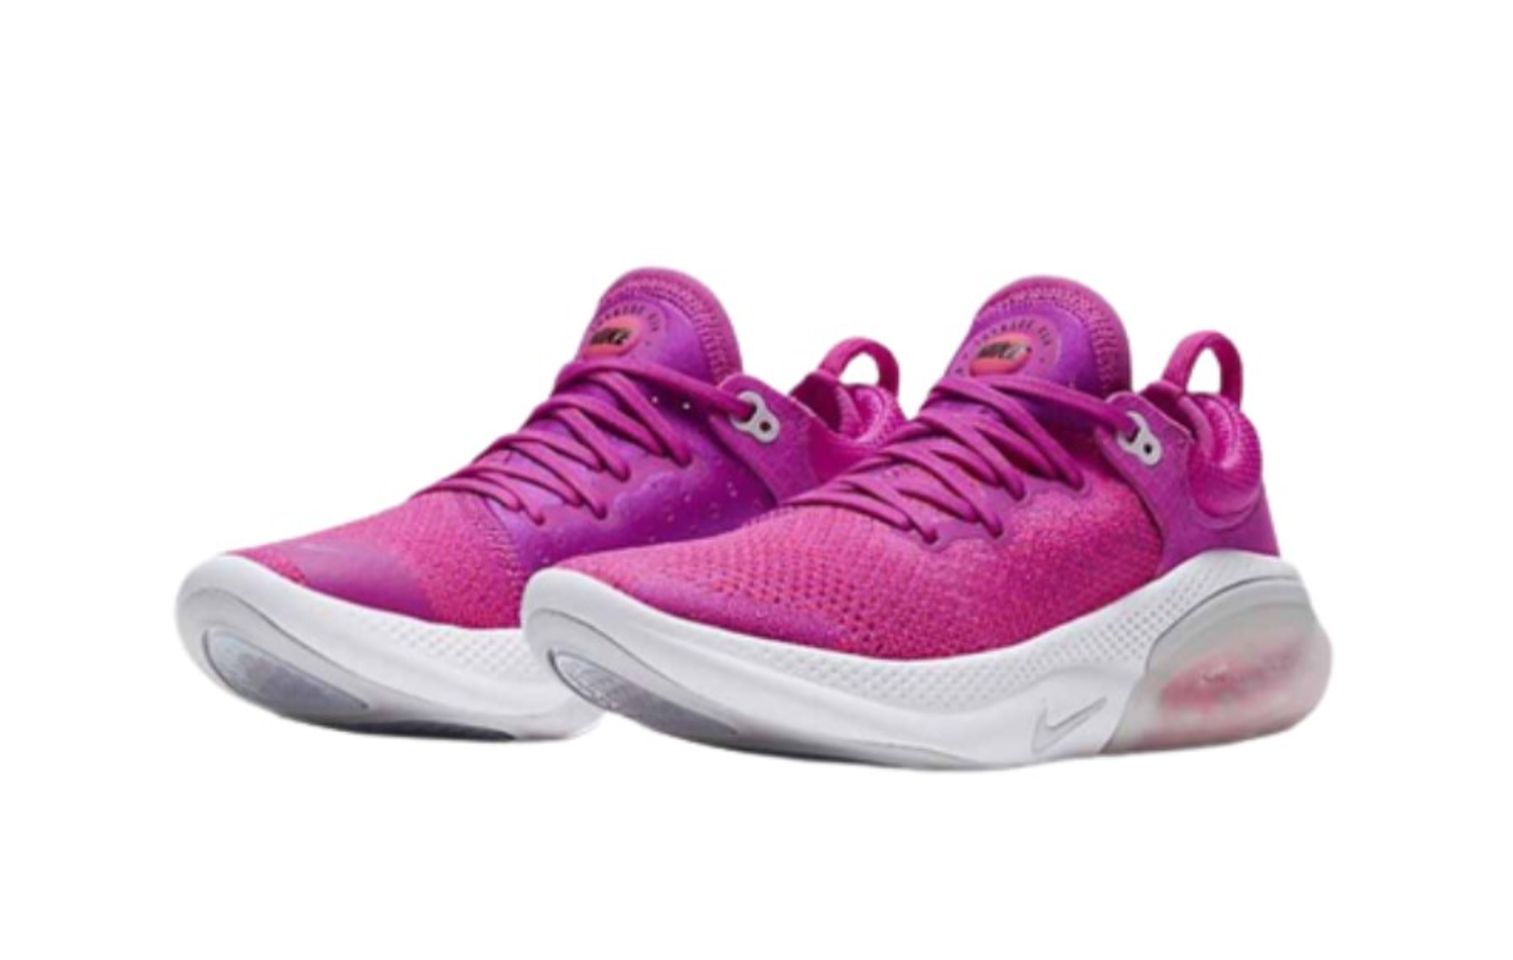 Giày thể thao Nike Joyride Flyknit màu hồng